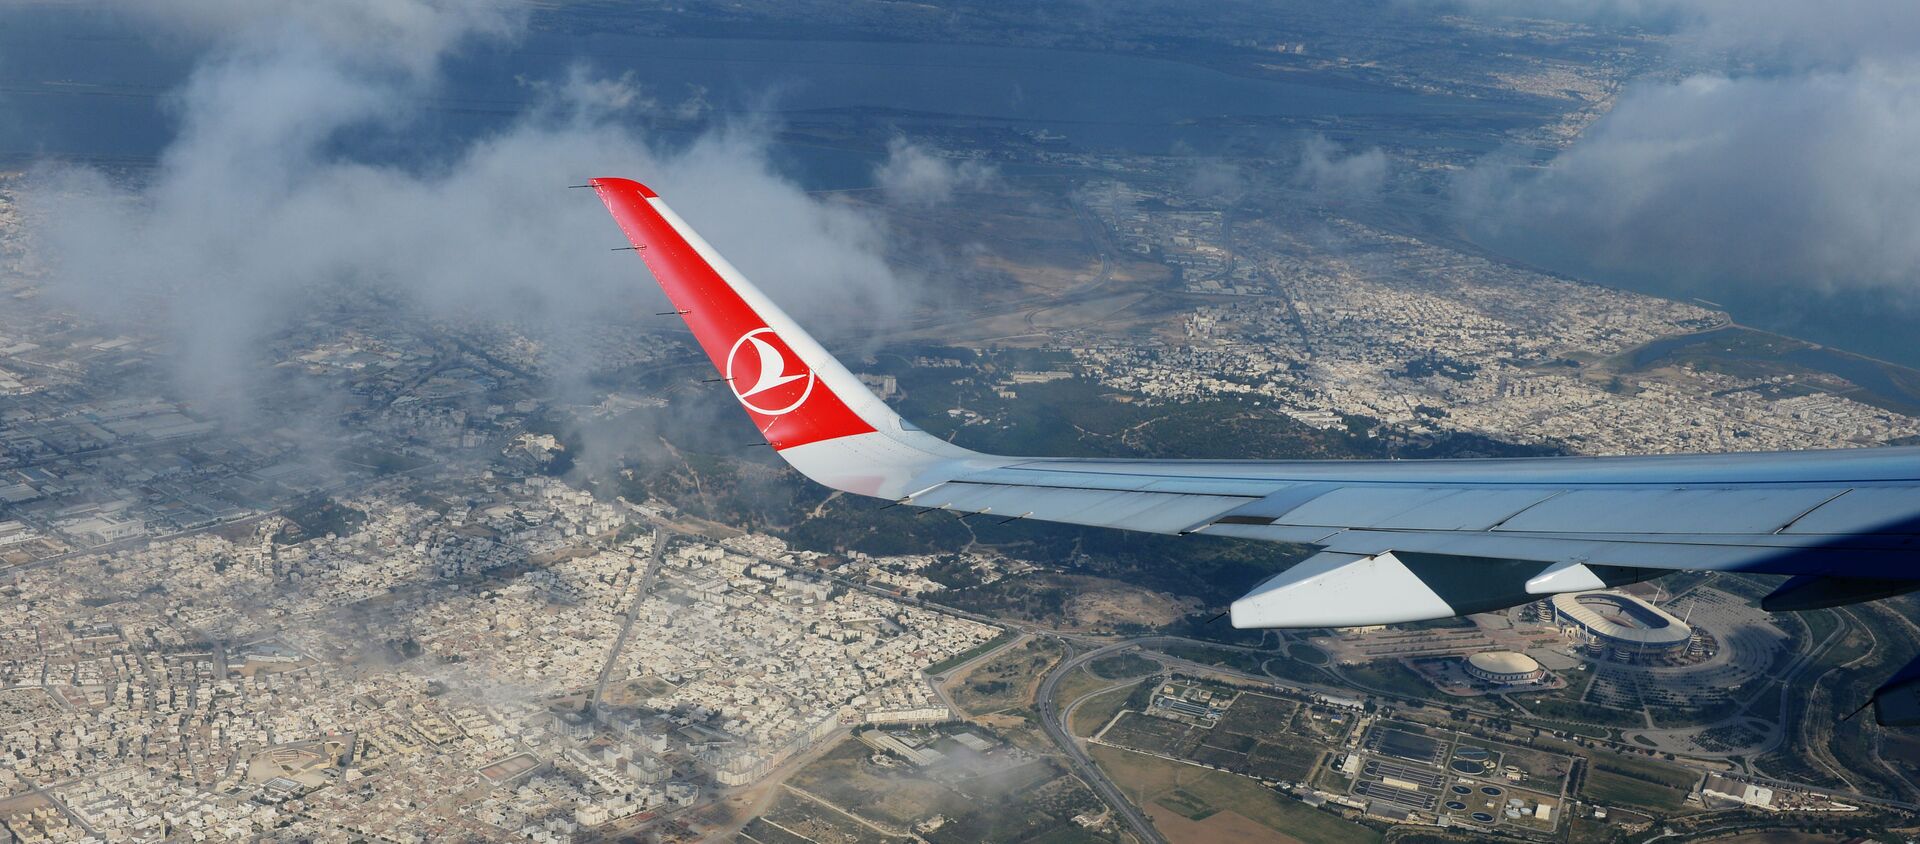 Вид на территорию города Туниса из самолета авиакомпании Turkish Airlines во время полета. - Sputnik Аҧсны, 1920, 19.06.2021